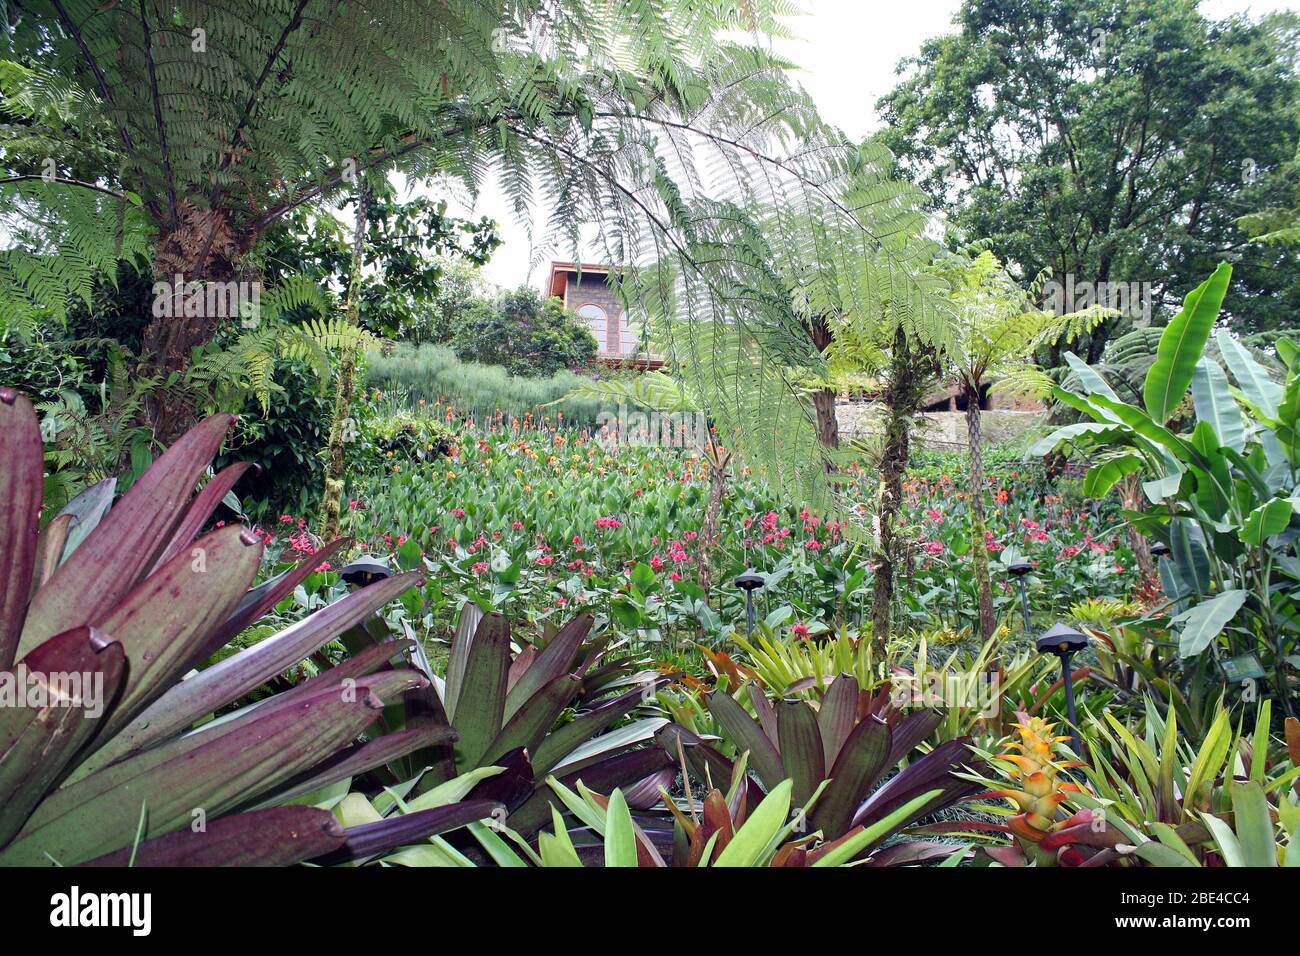 Rain forest in Costa Rica Stock Photo